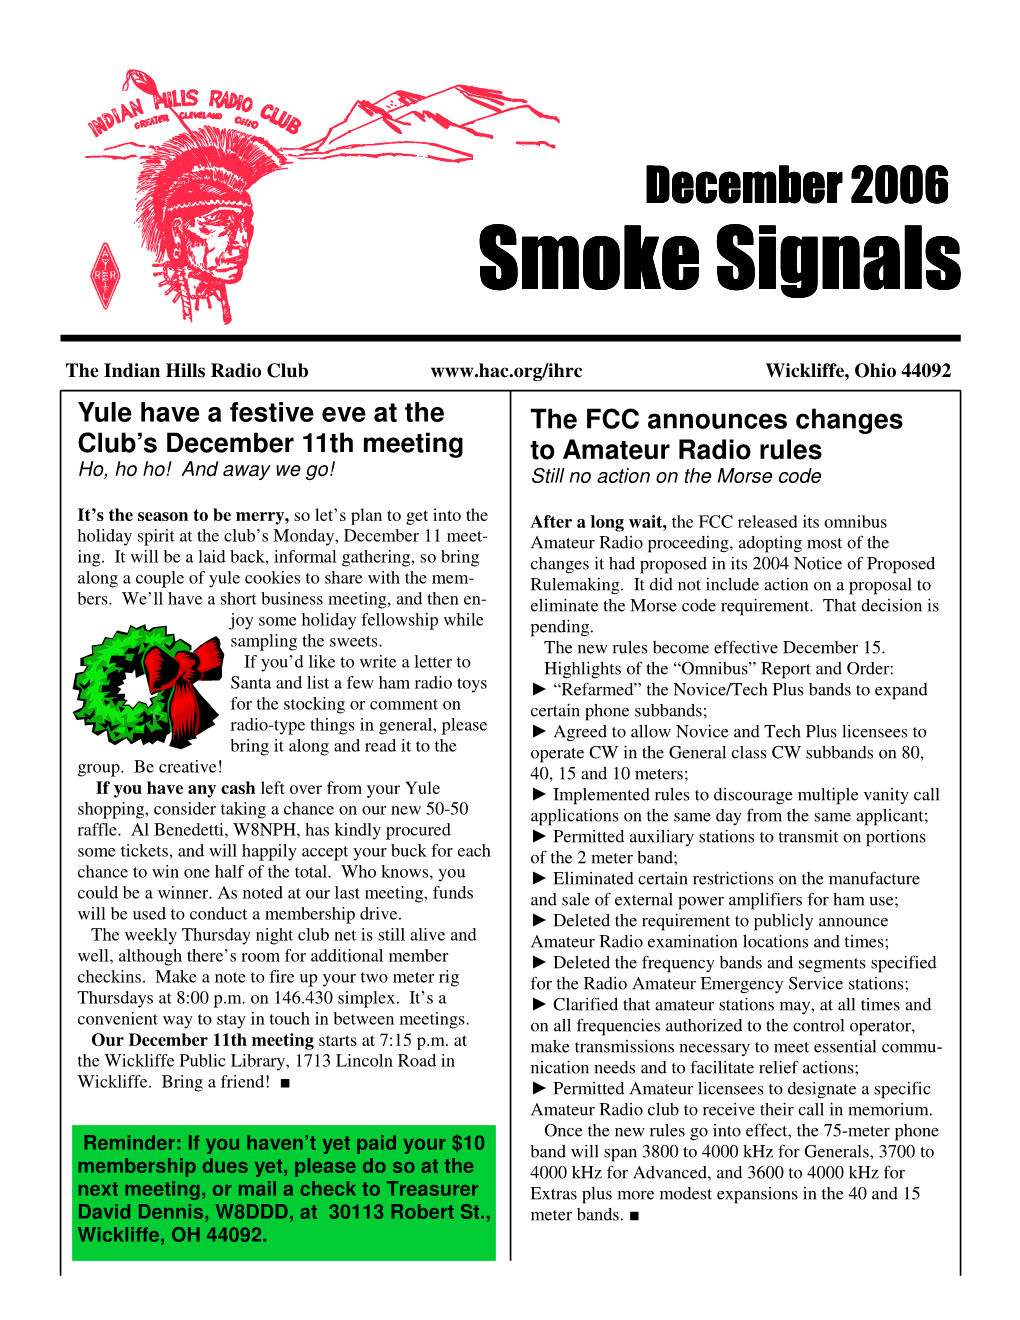 Dec 2006 Smoke Signals.Pub